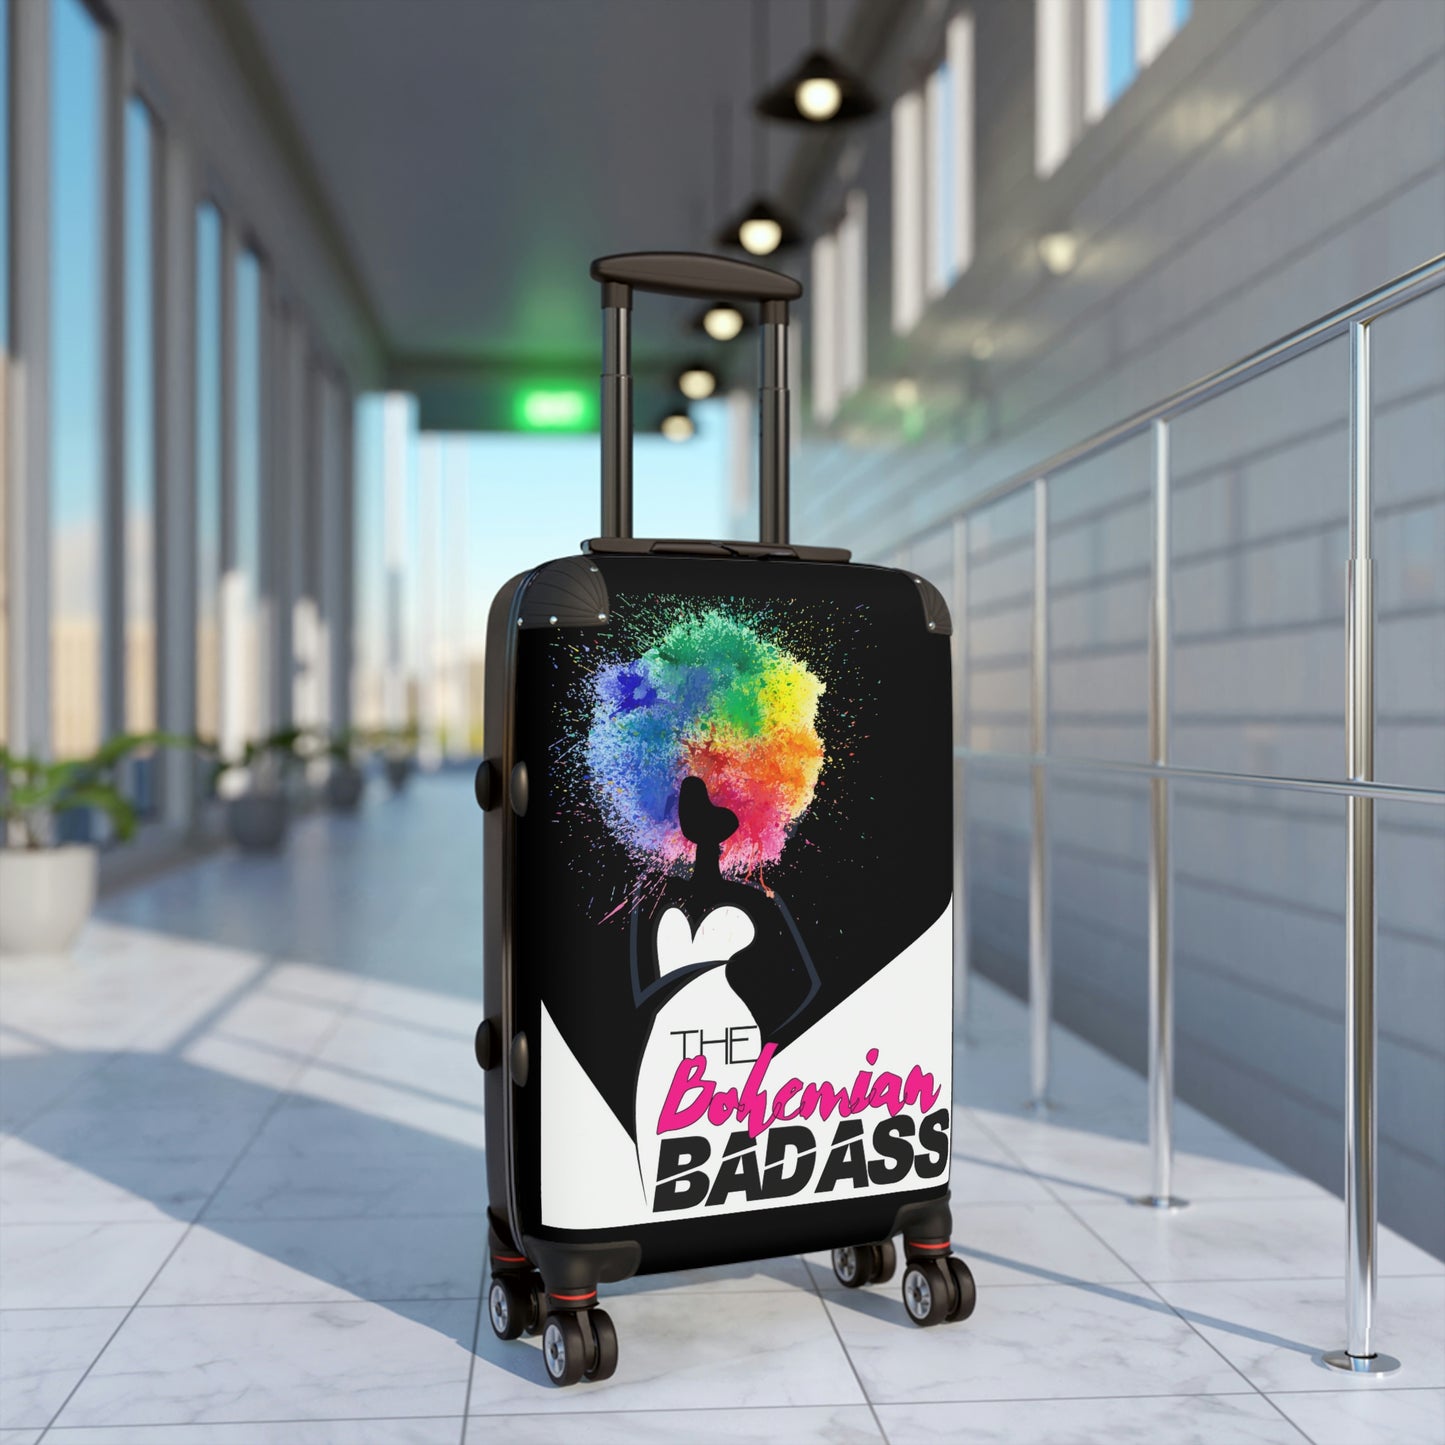 B-Badass Suitcase